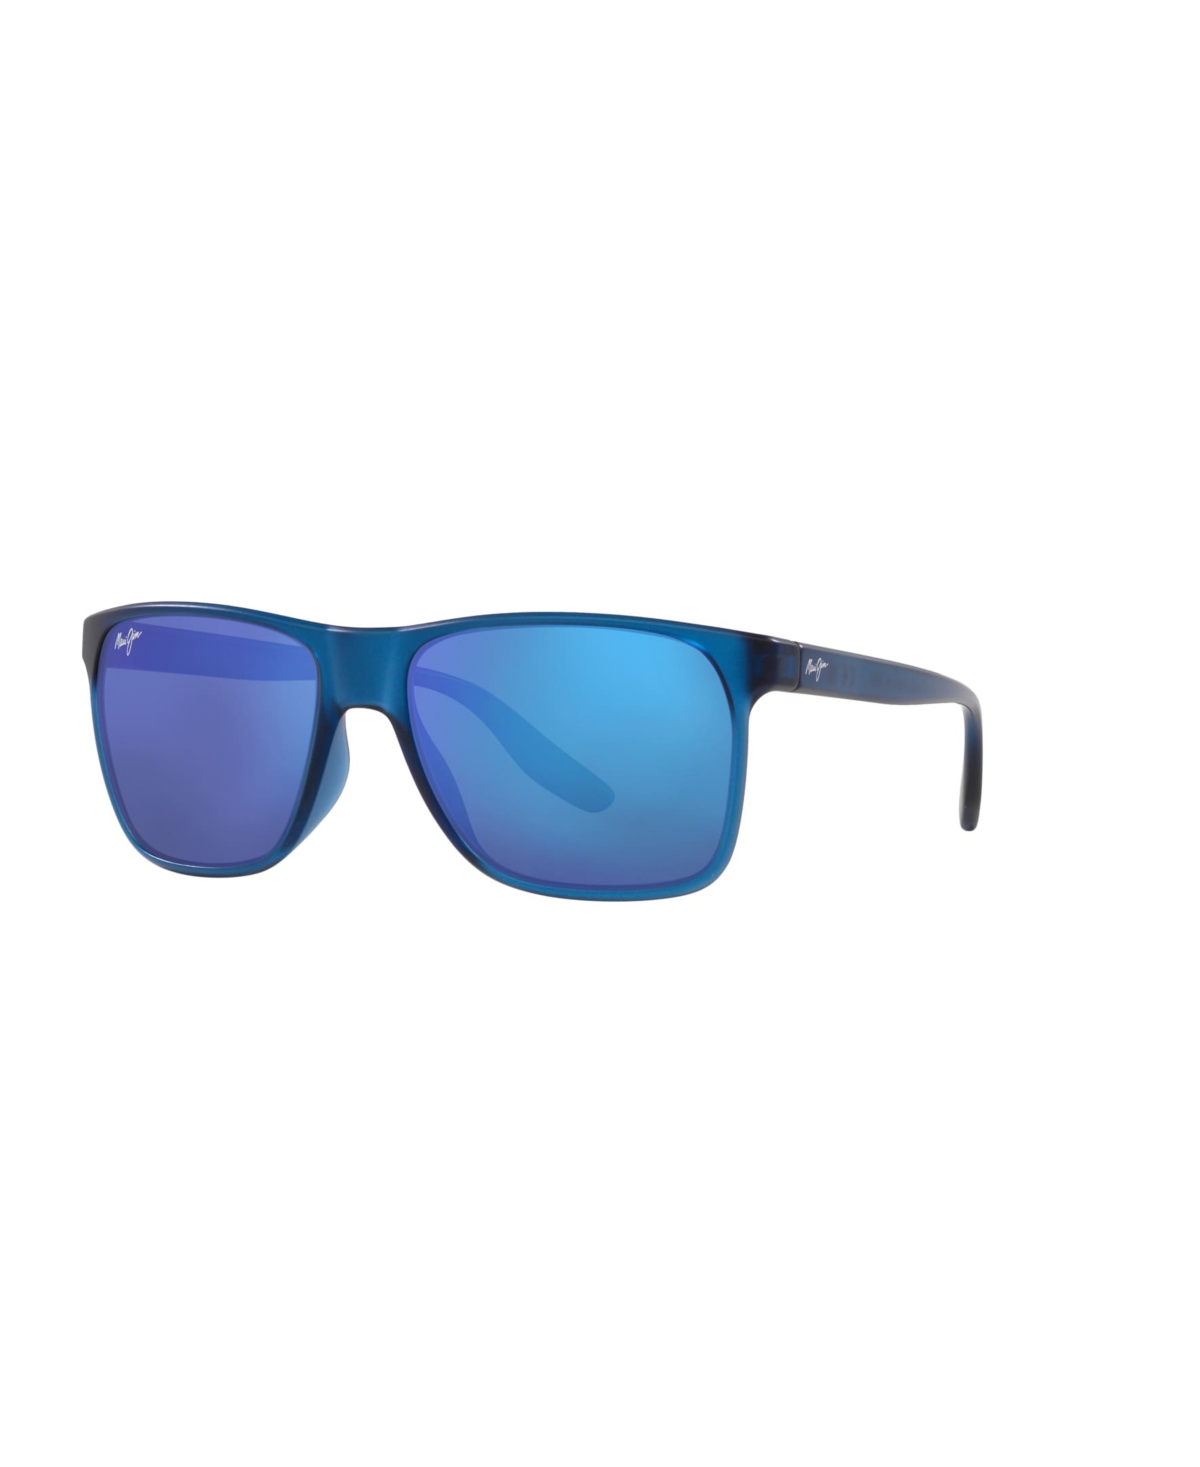 Maui Jim Men's Polarized Sunglasses, Pailolo Mj000692 In Blue